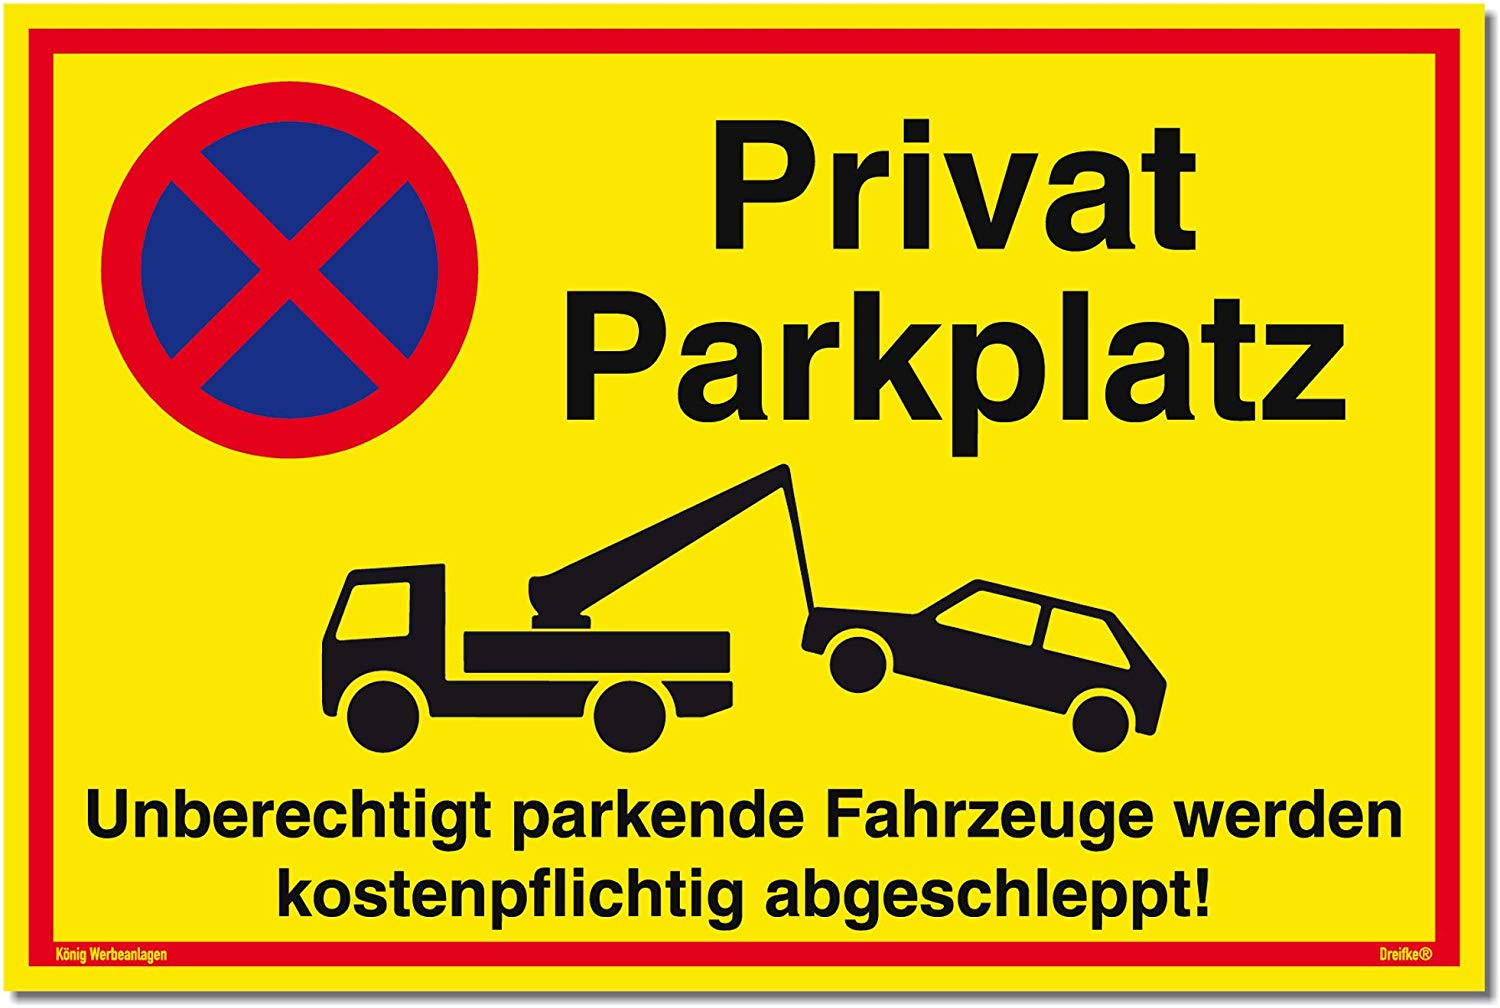 Parkplatz-Reservierungs-Schild Privatparkplatz - Aufkleber-Shop